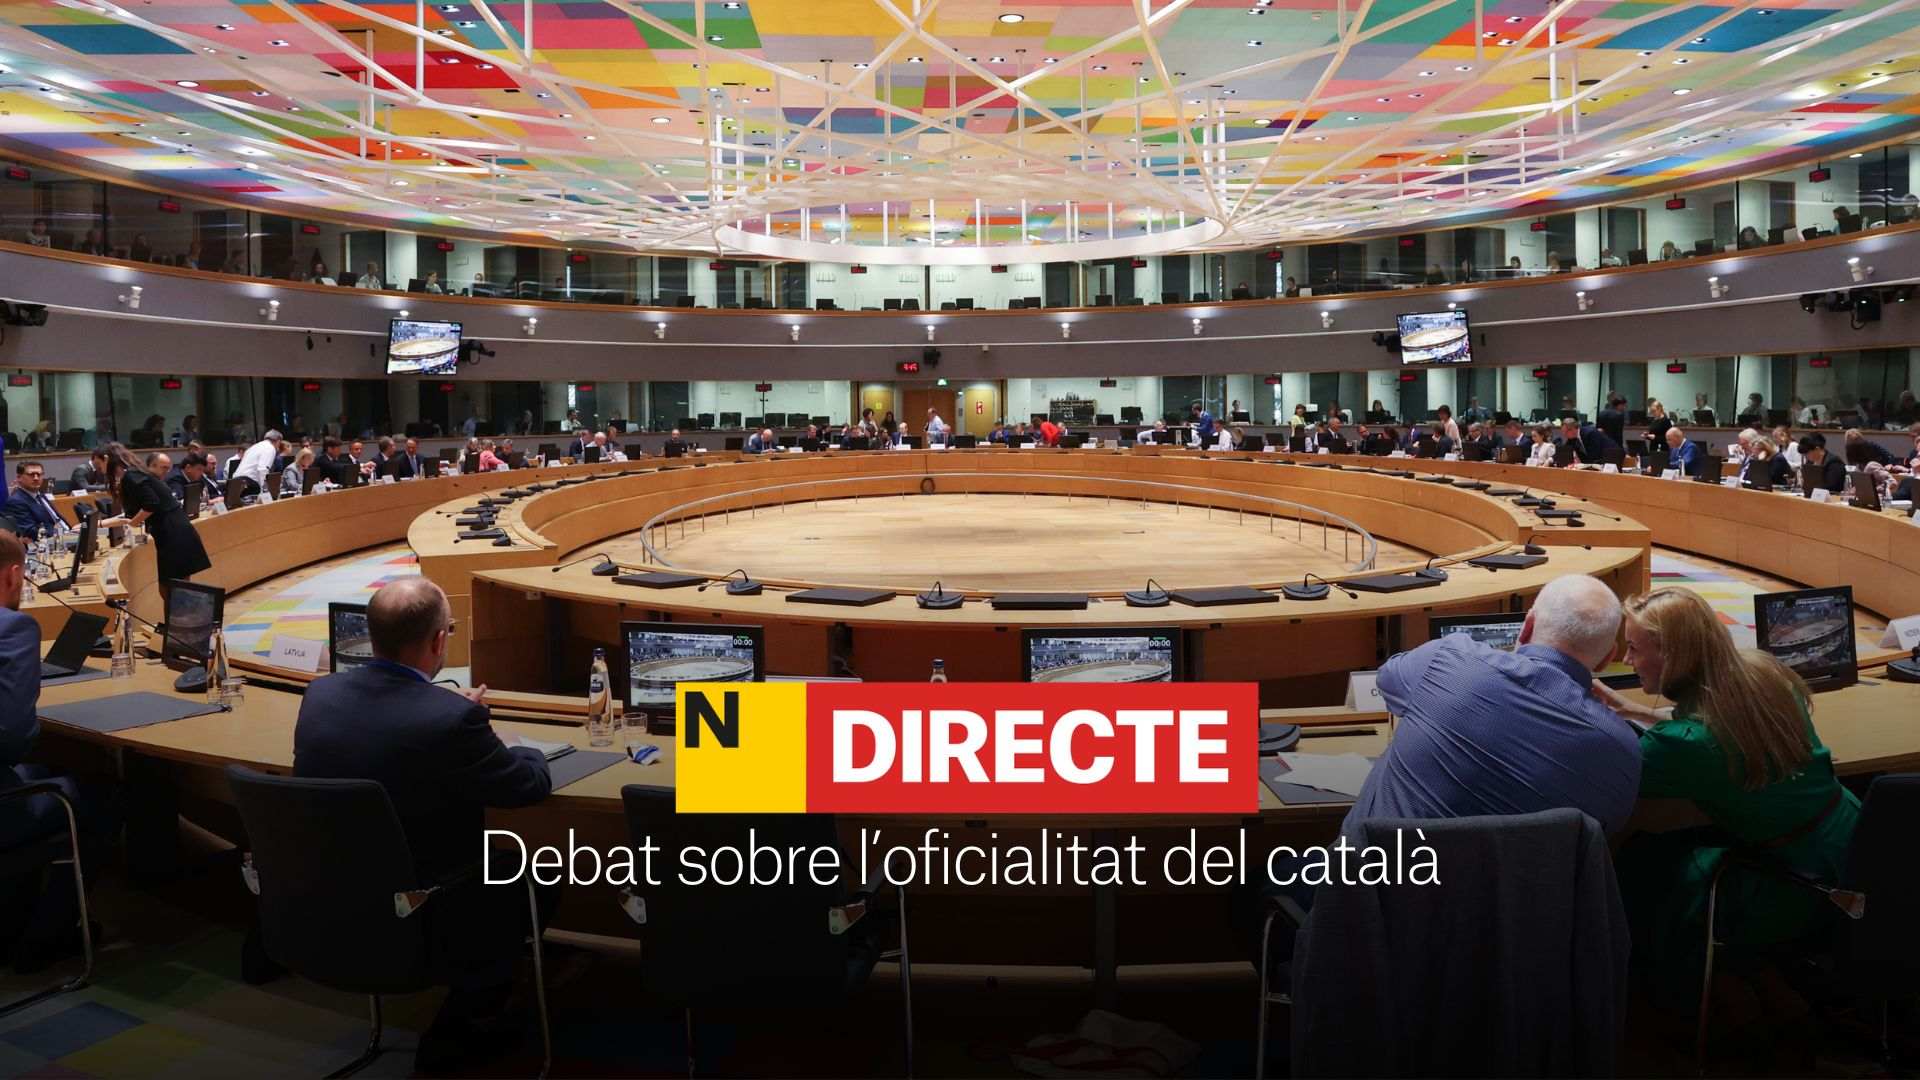 Debat sobre l'oficialitat del català a la UE, DIRECTE | Última hora del Consell d'Afers Generals a Luxemburg